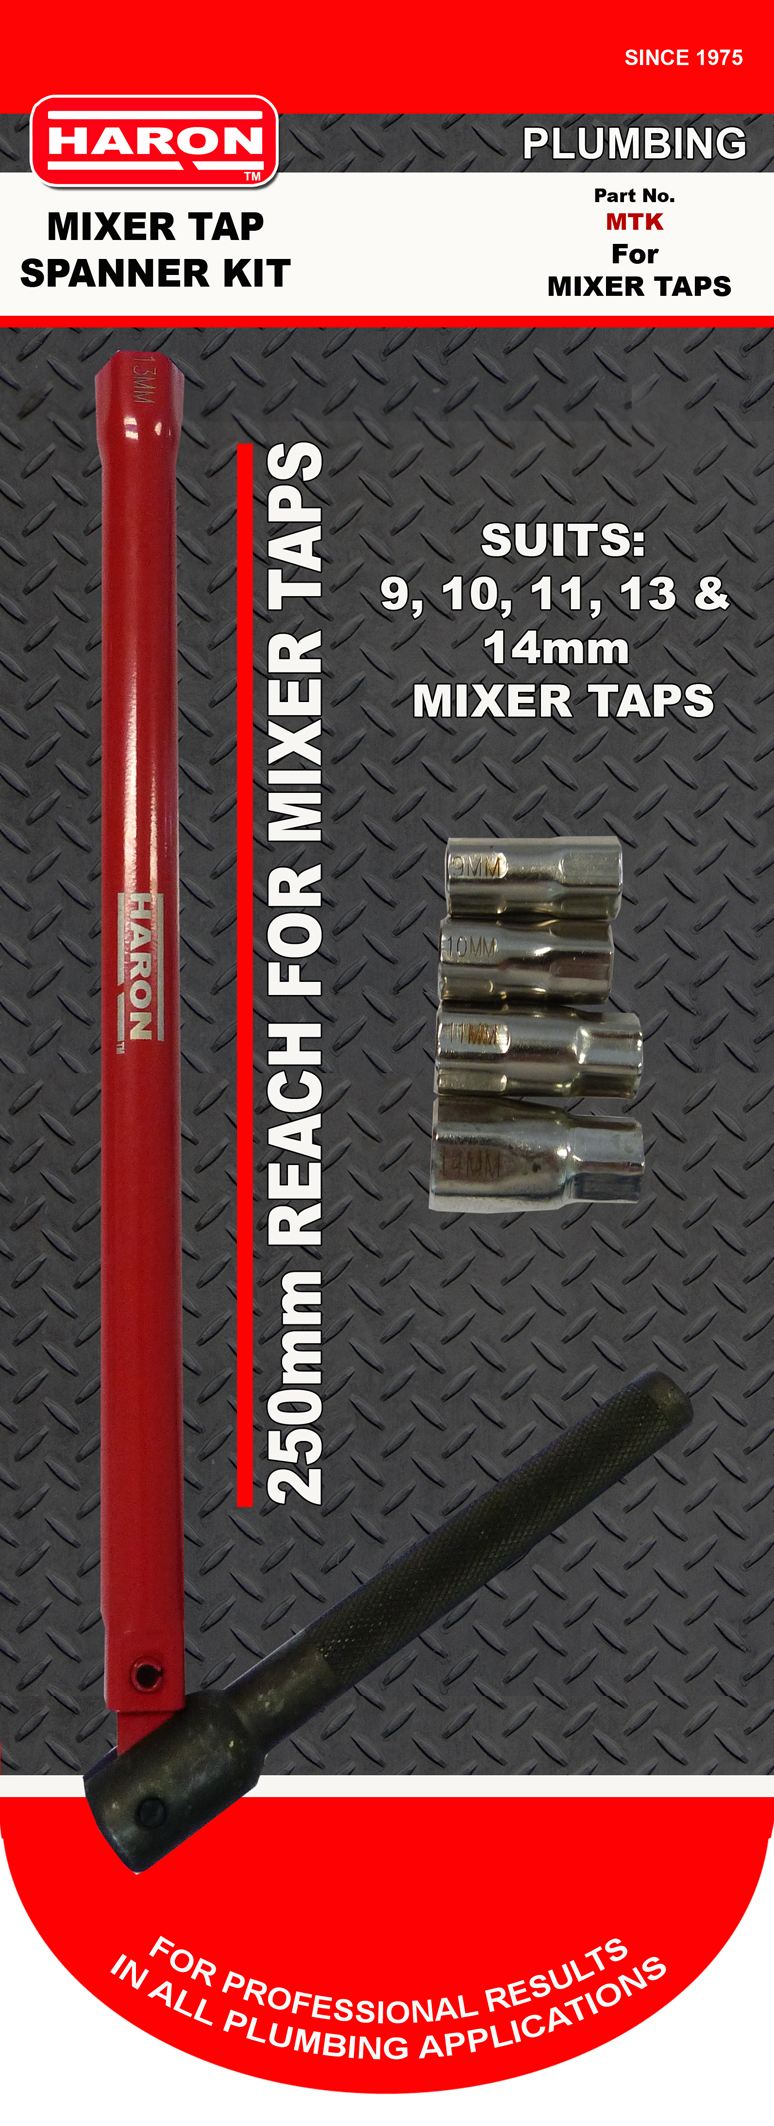 MIXER TAP SPANNER KIT 9- 10-11-13-14mm